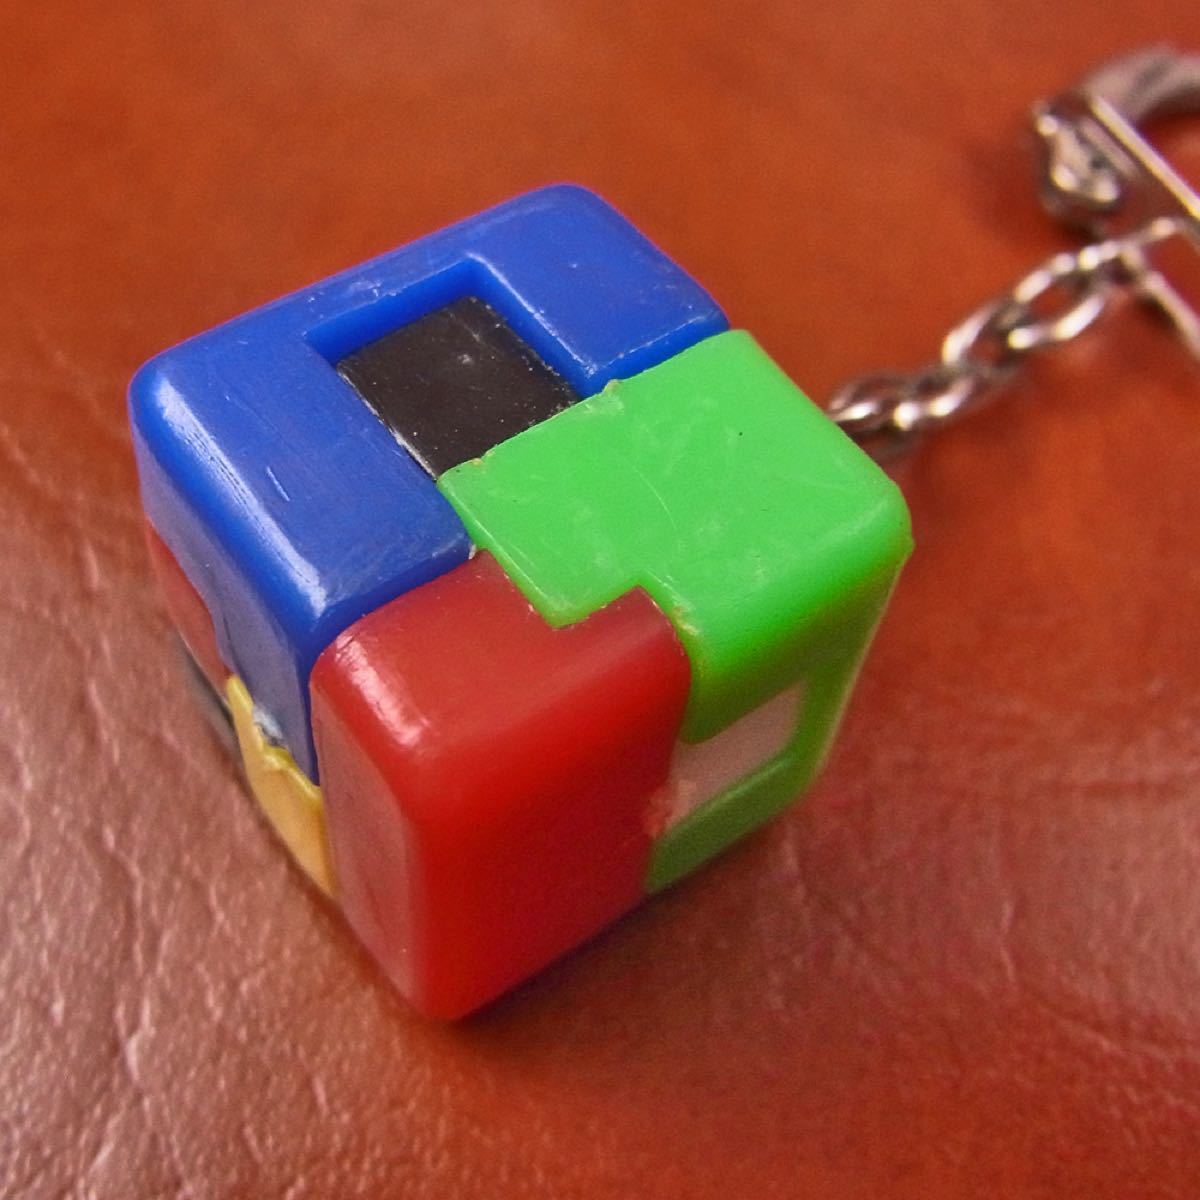 昭和40年代 ミニ立体パズル キーホルダー 昭和レトロ 知恵の玉 正方形 パズルホルダー pazzle key holder